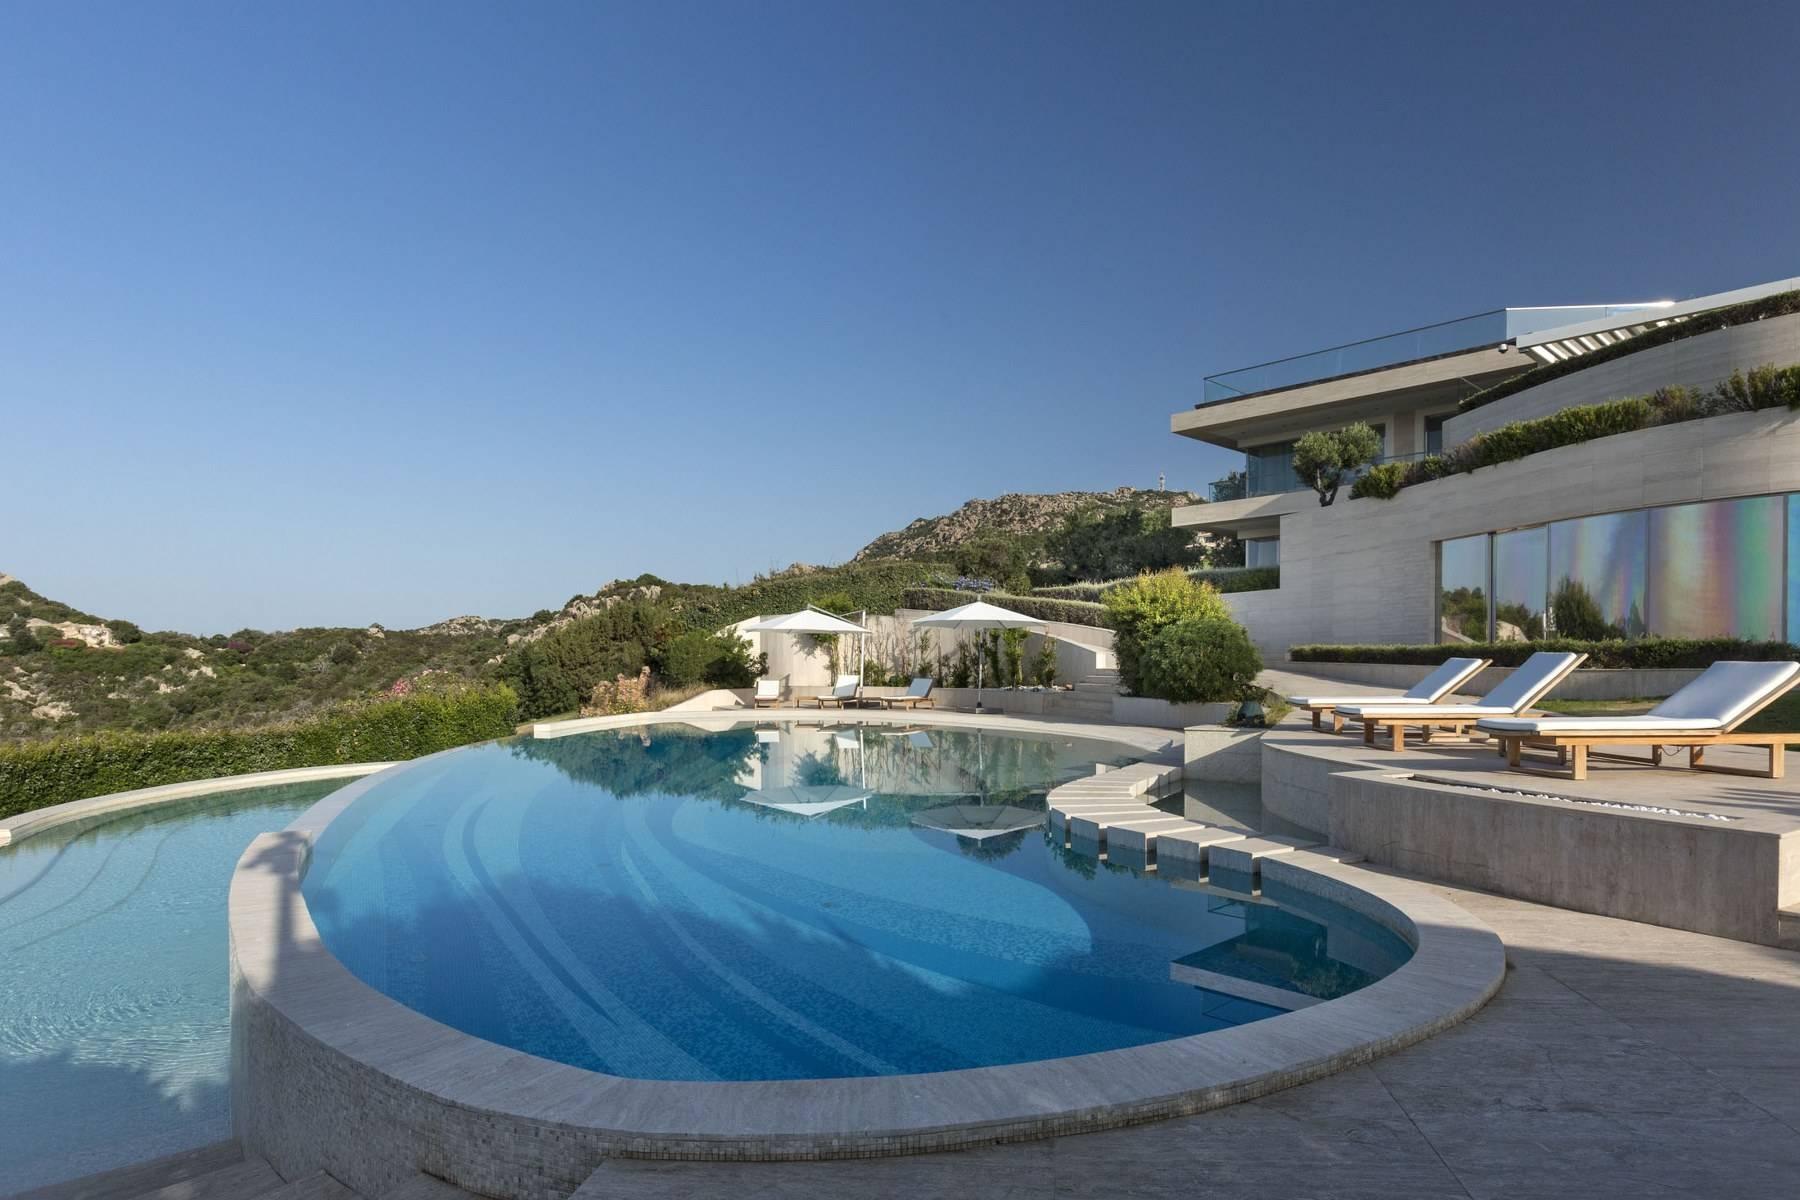 Glamour - Prestigious and elegant villa located in the heart of the Costa Smeralda - 25